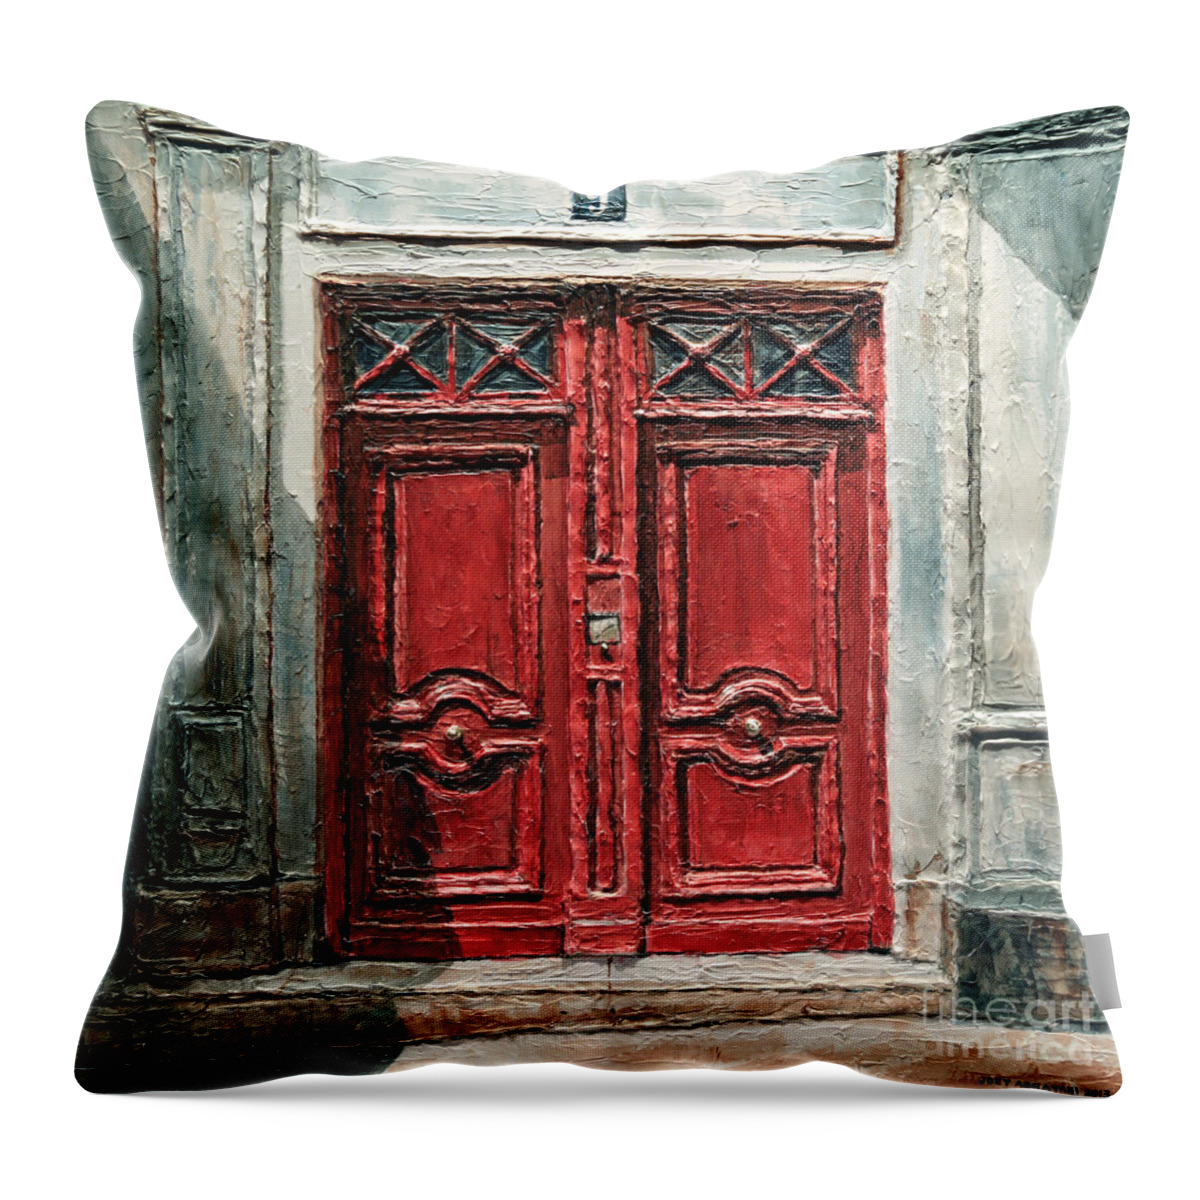 Parisian Doors Throw Pillow featuring the painting Parisian Door No.9 by Joey Agbayani